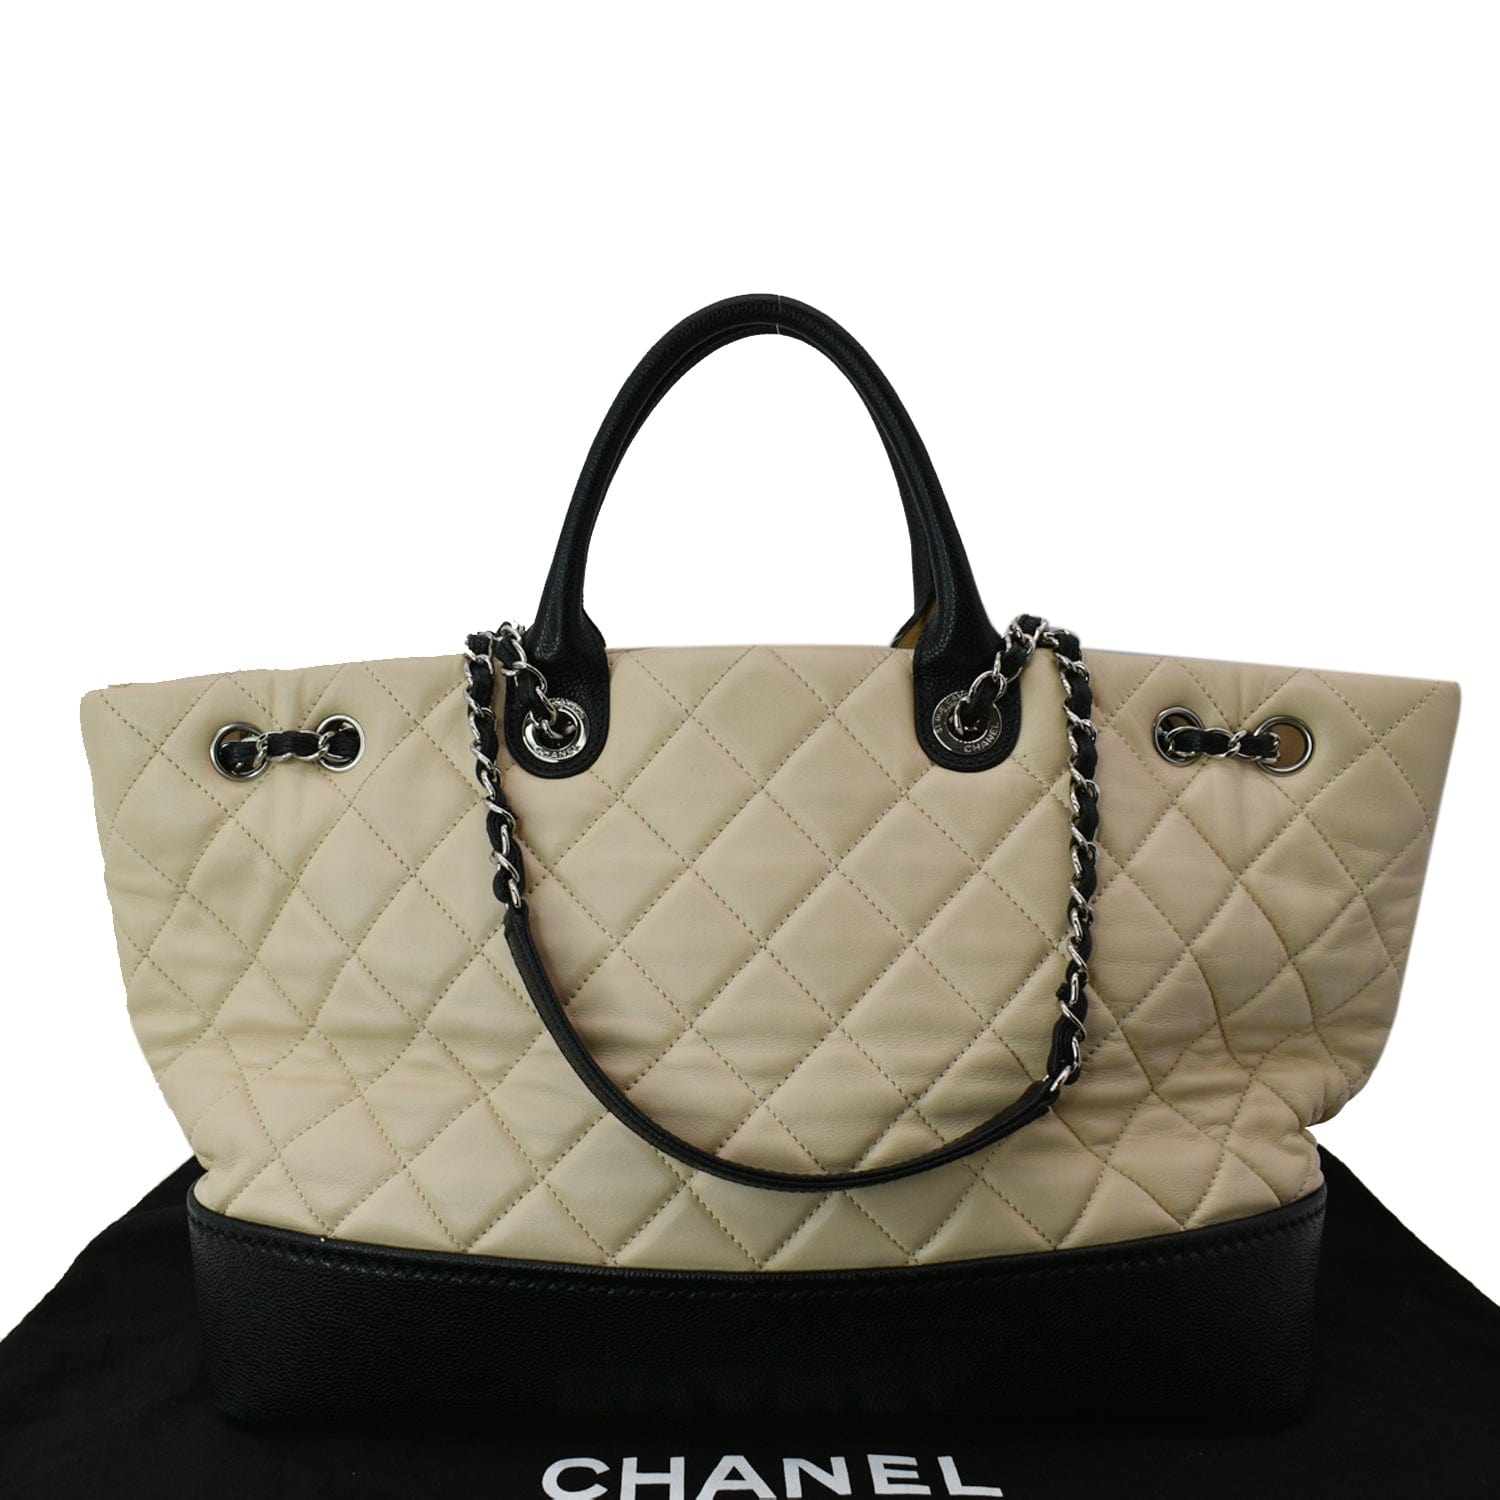 Chanel bag 👉Original outlet 👍 - Swag Castle Online Shop